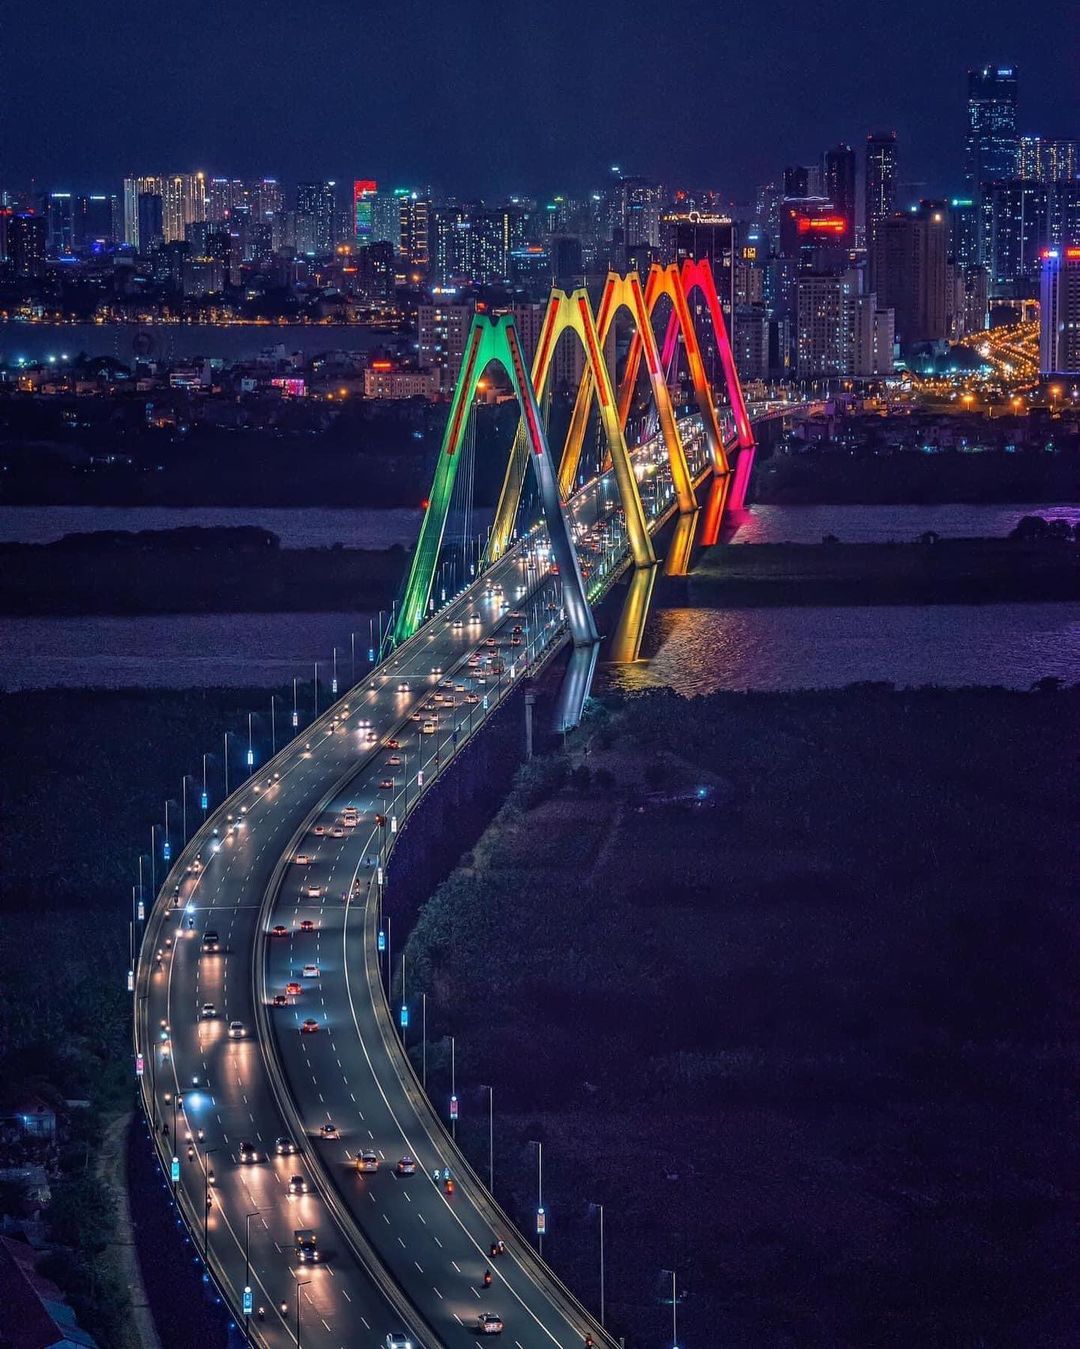 Cầu Nhật Tân được xem là biểu tượng mới của Thủ đô Hà Nội với 5 nhịp dây văng tượng trưng cho 5 cửa ô, và cũng tượng trưng cho 5 cánh hoa đào của làng đào Nhật Tân - Hà Nội. Ảnh: @vietnamlocaladventures